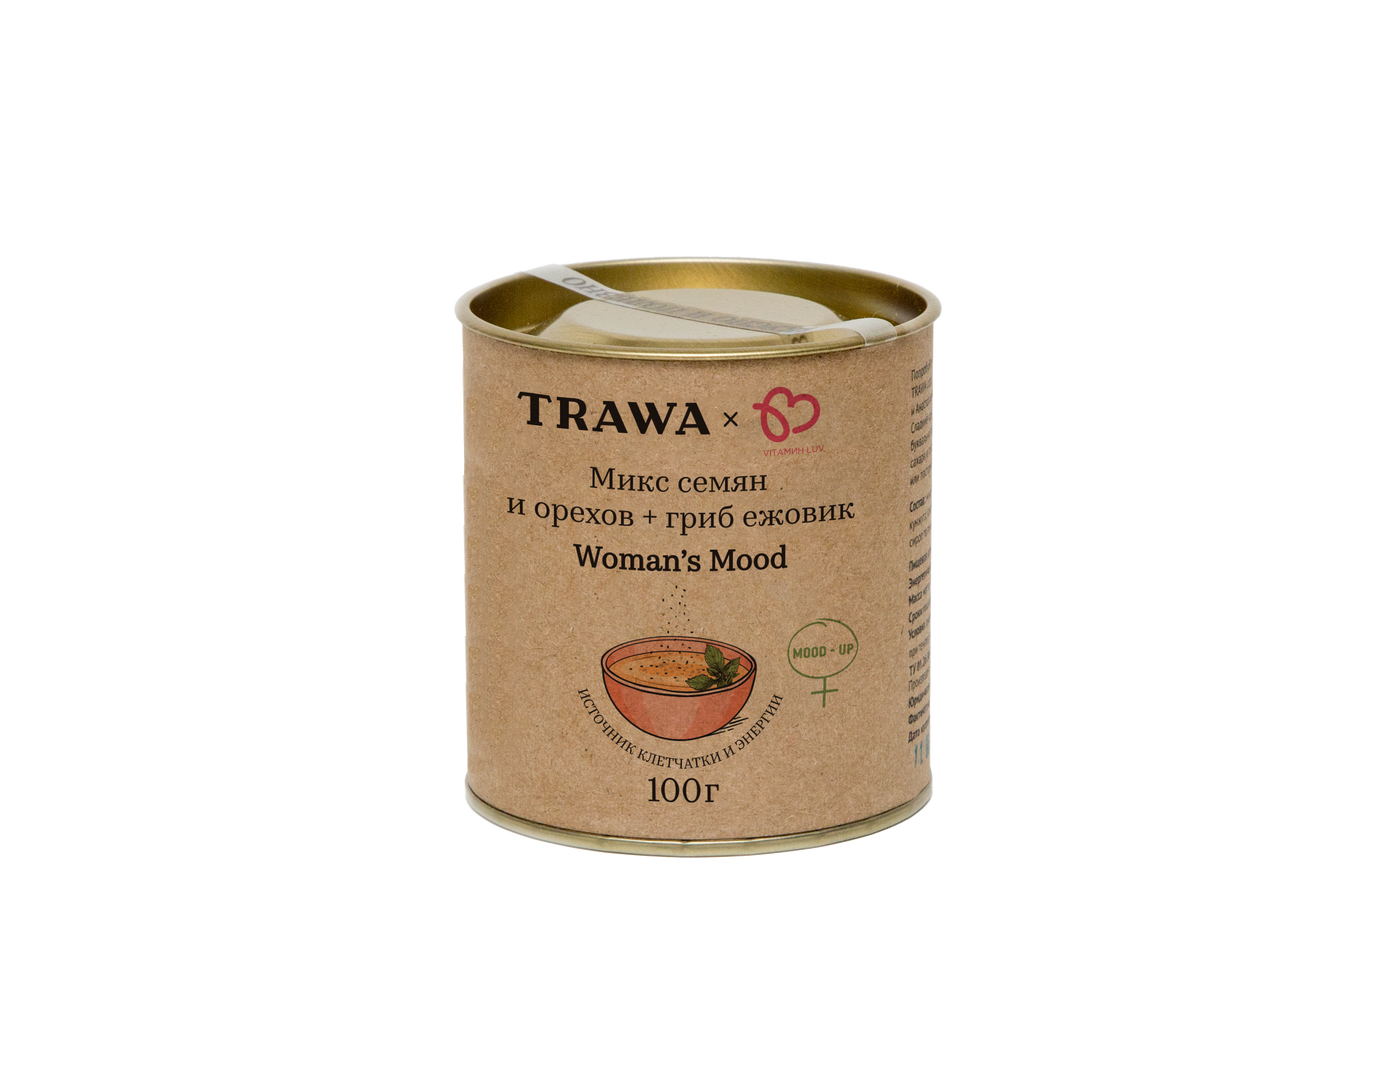 Woman's Mood Микс семян, орехов + гриб ежовик купить на сайте TRAWA